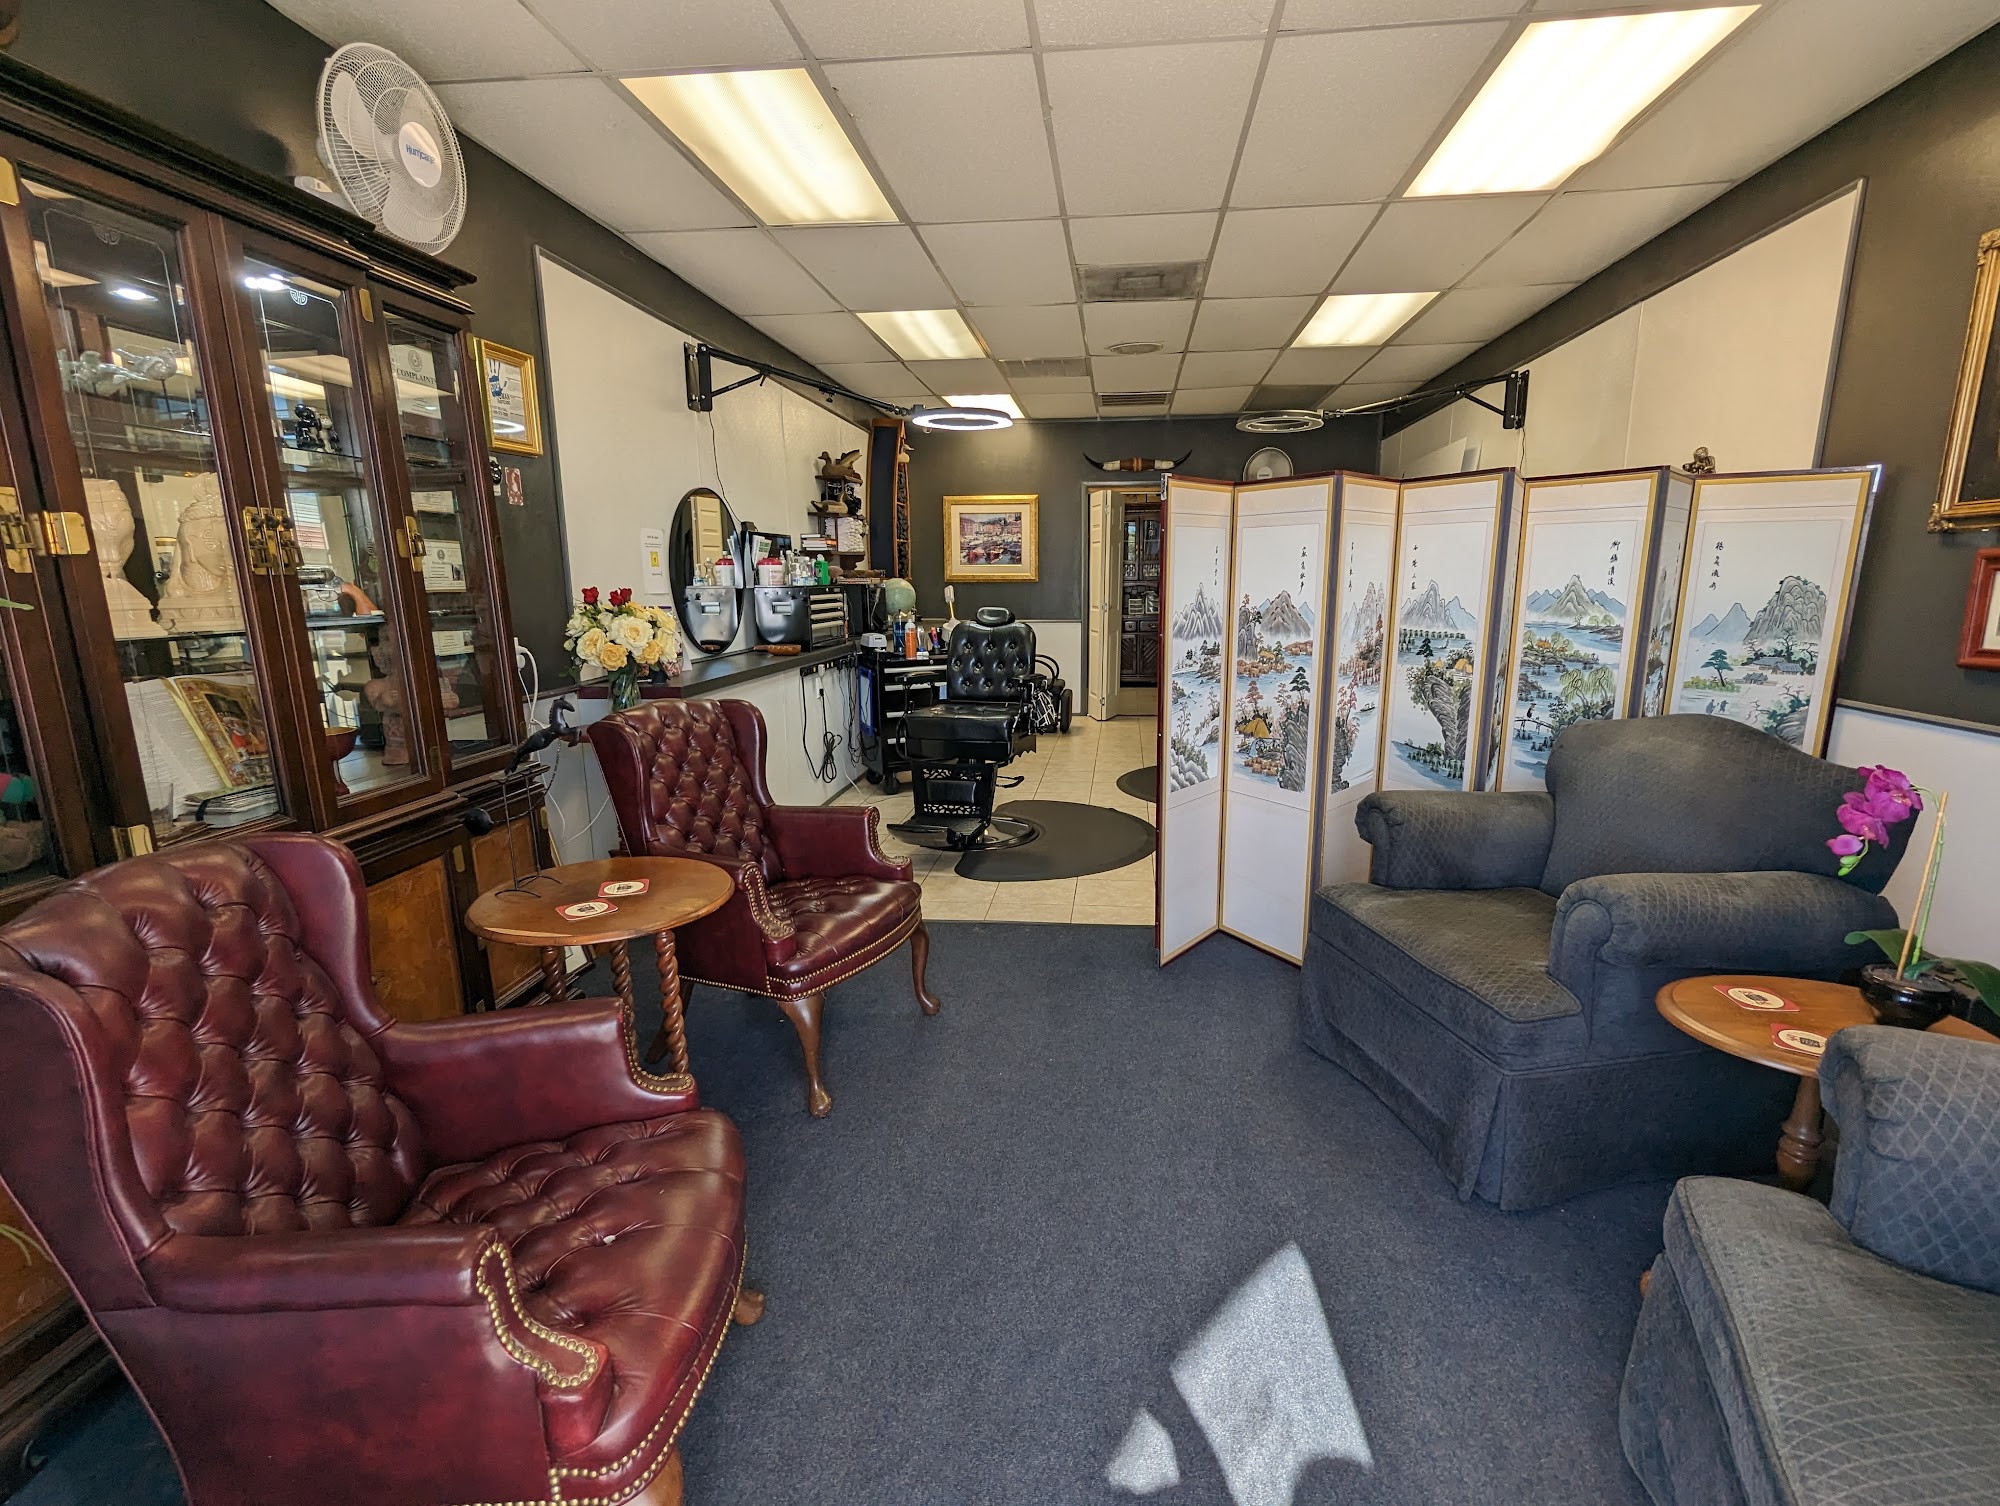 Wes' Barber Shop & Salon